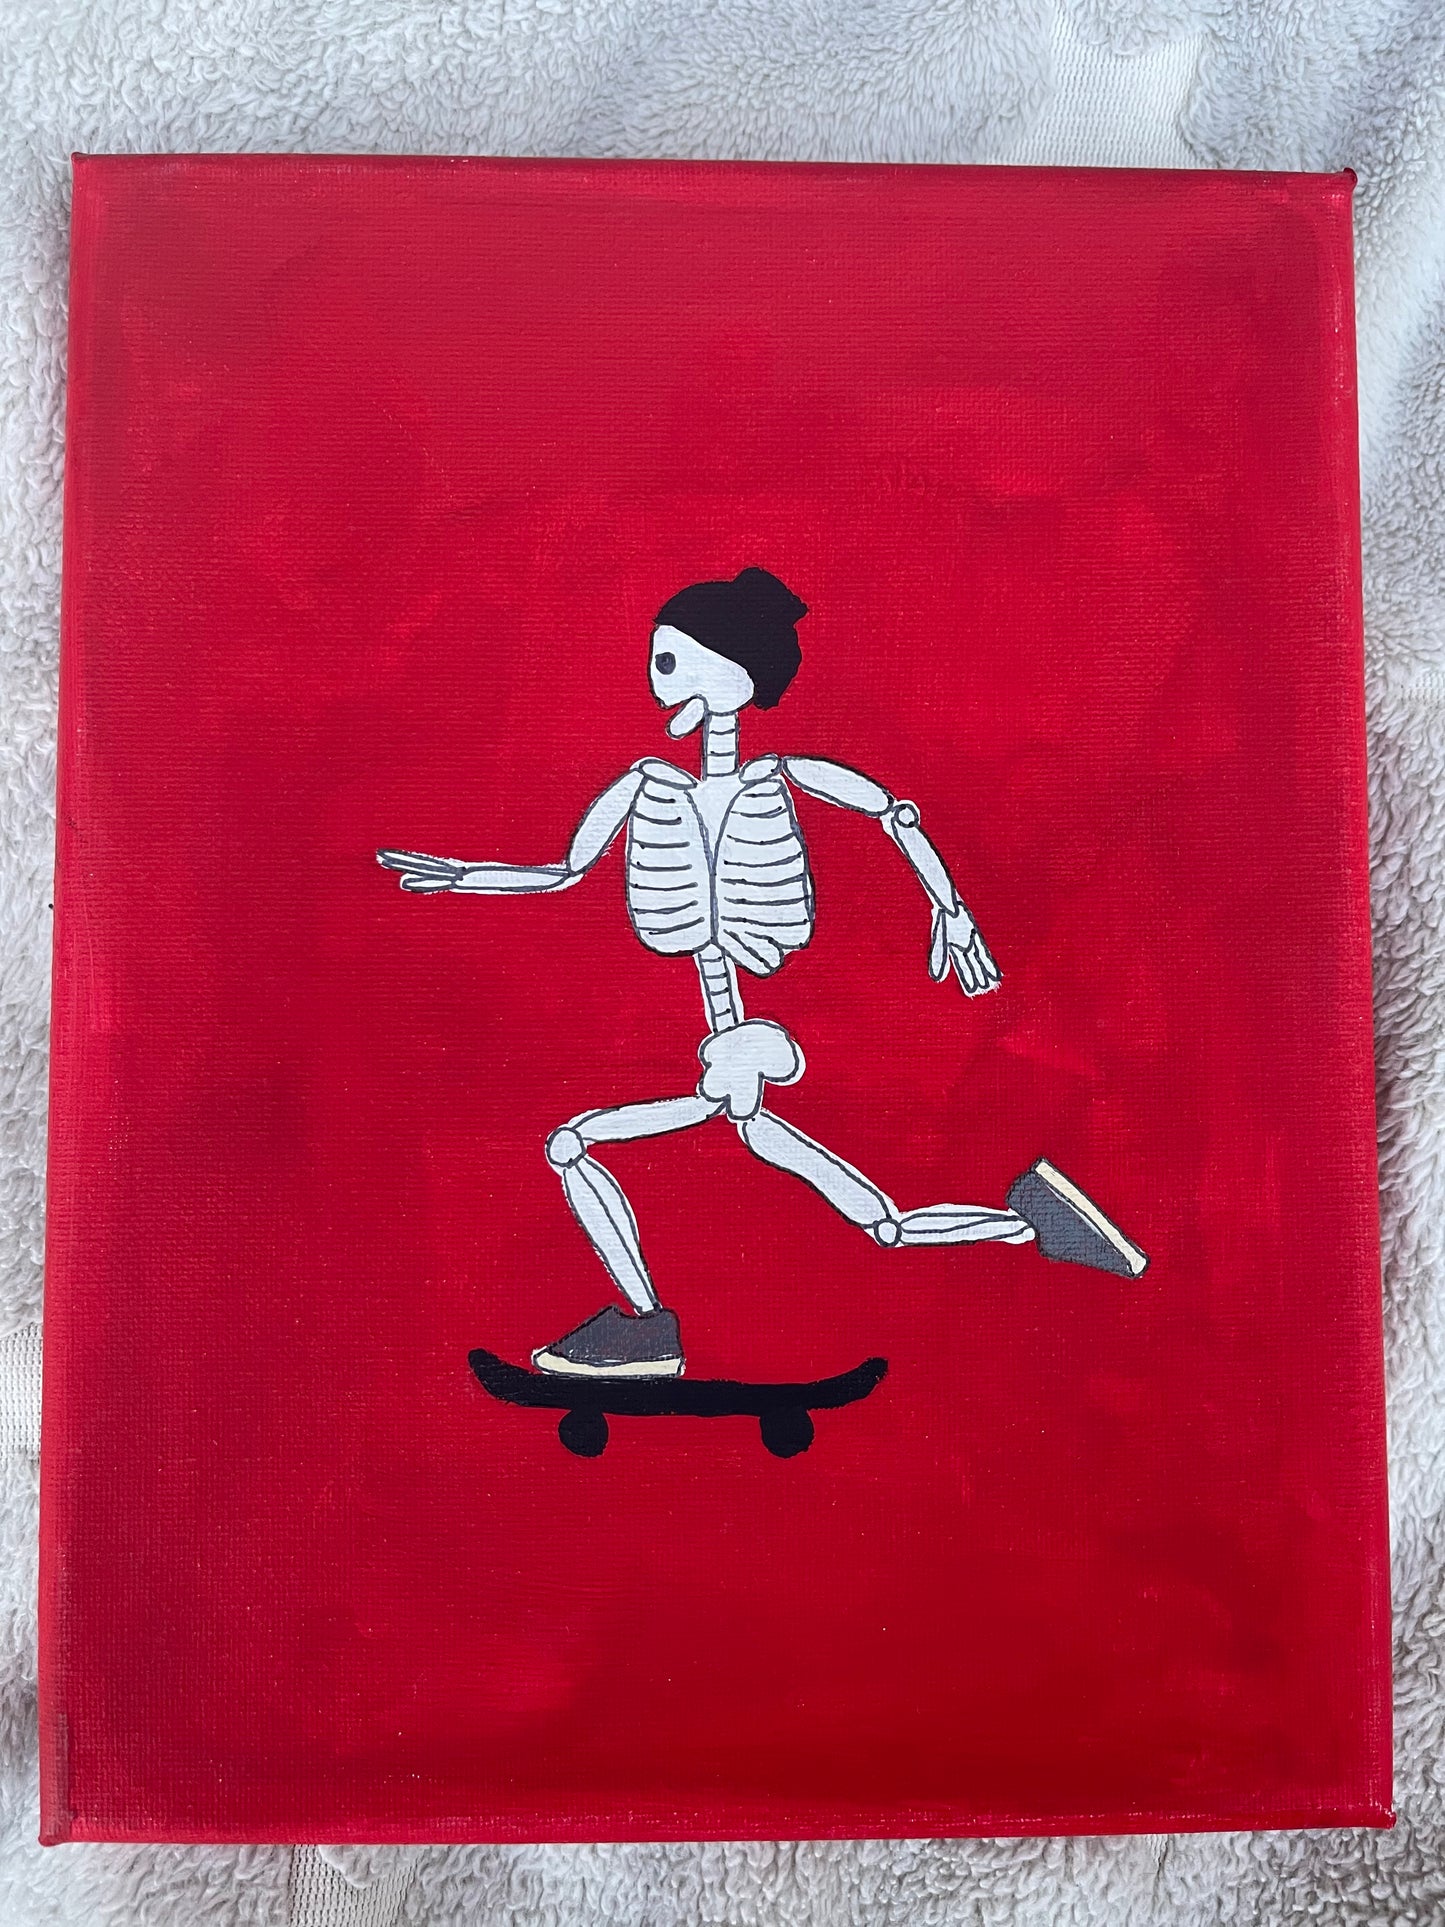 Skateboard SKeleton 90s Theme by em_gem_canvases